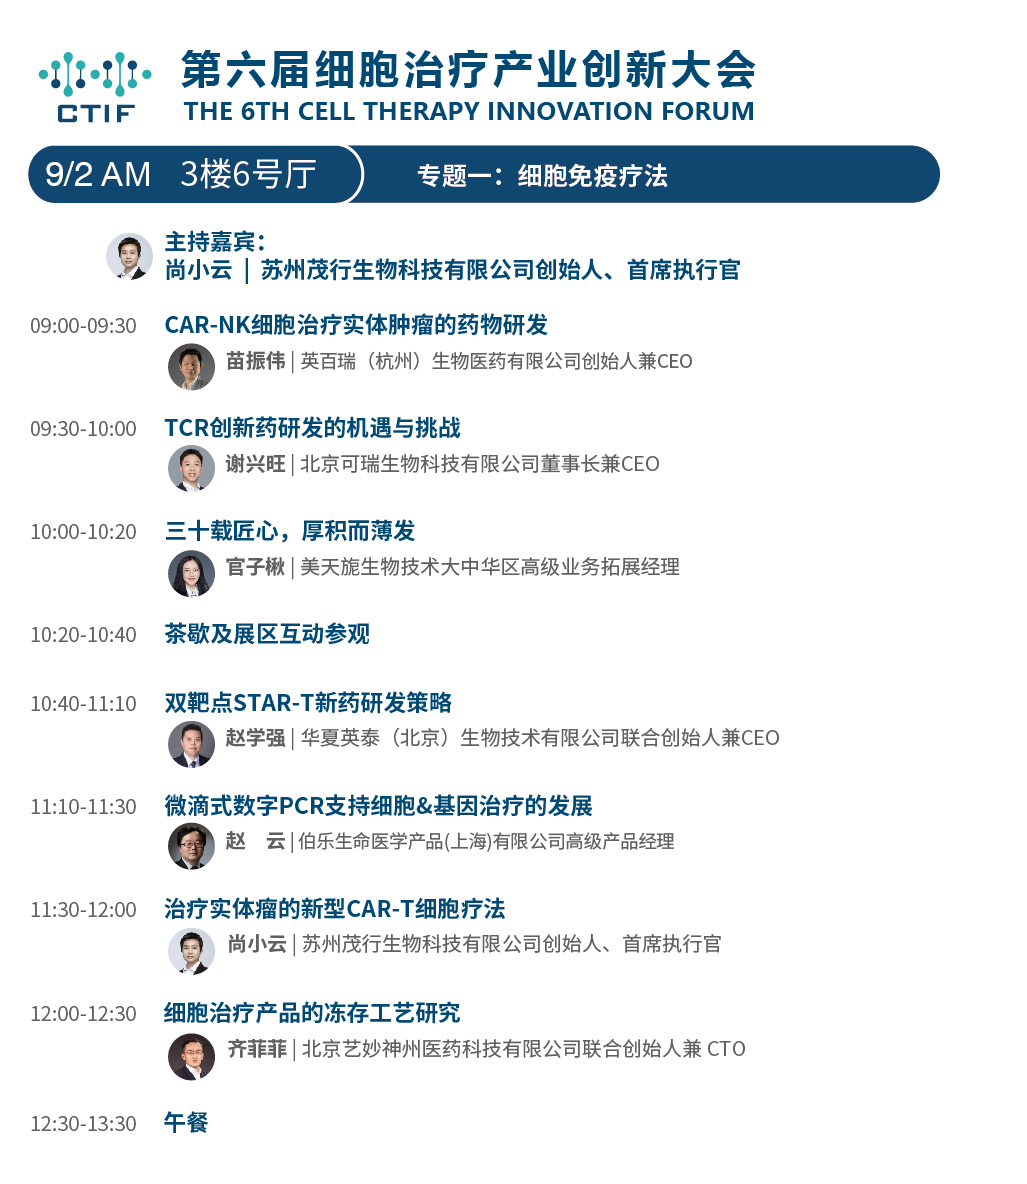 第七屆全球精準醫療(中國）峰會天津